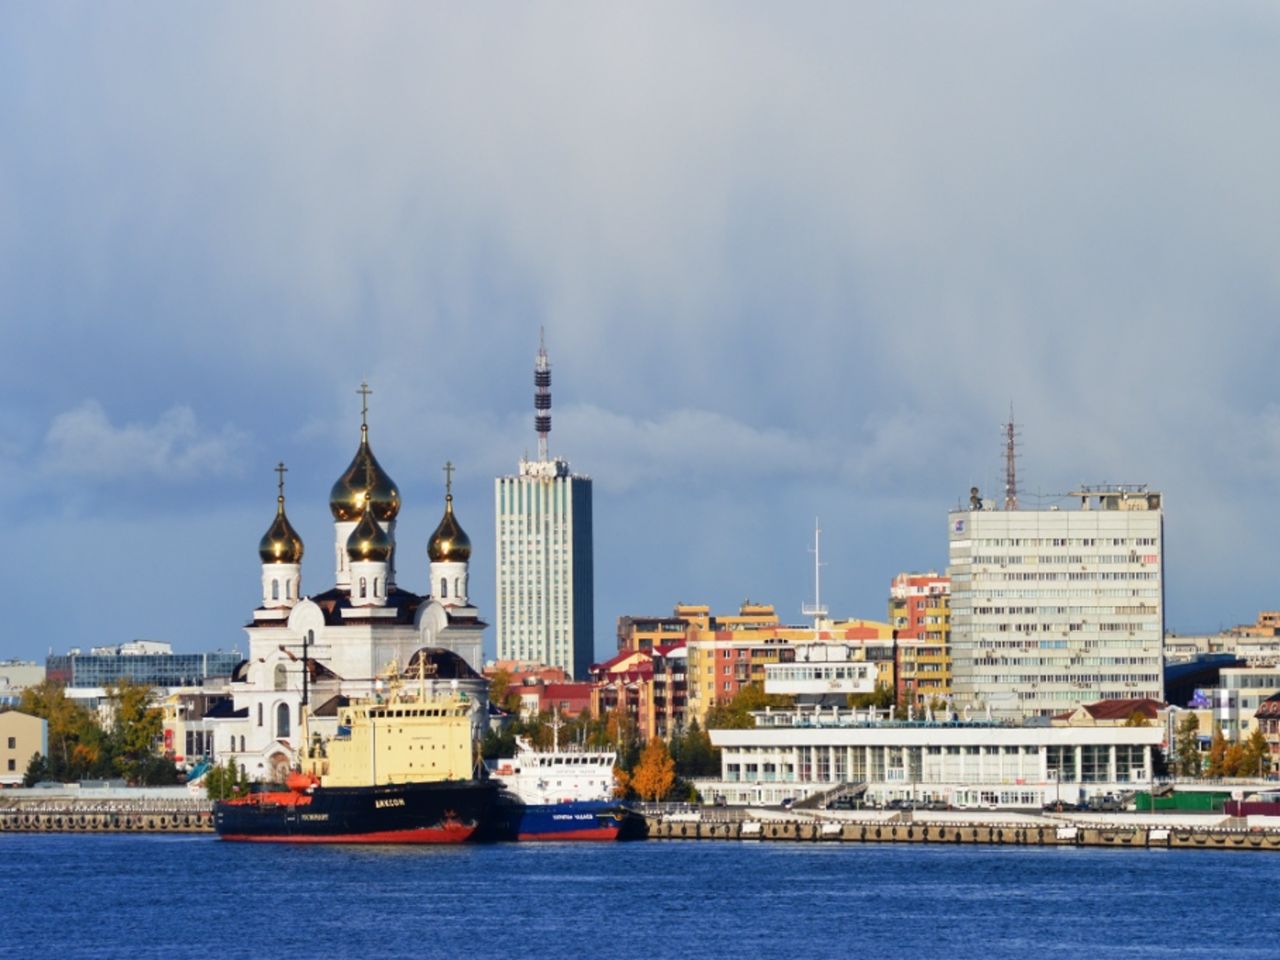 Обзорная экскурсия по Архангельску  | Цена 6250₽, отзывы, описание экскурсии